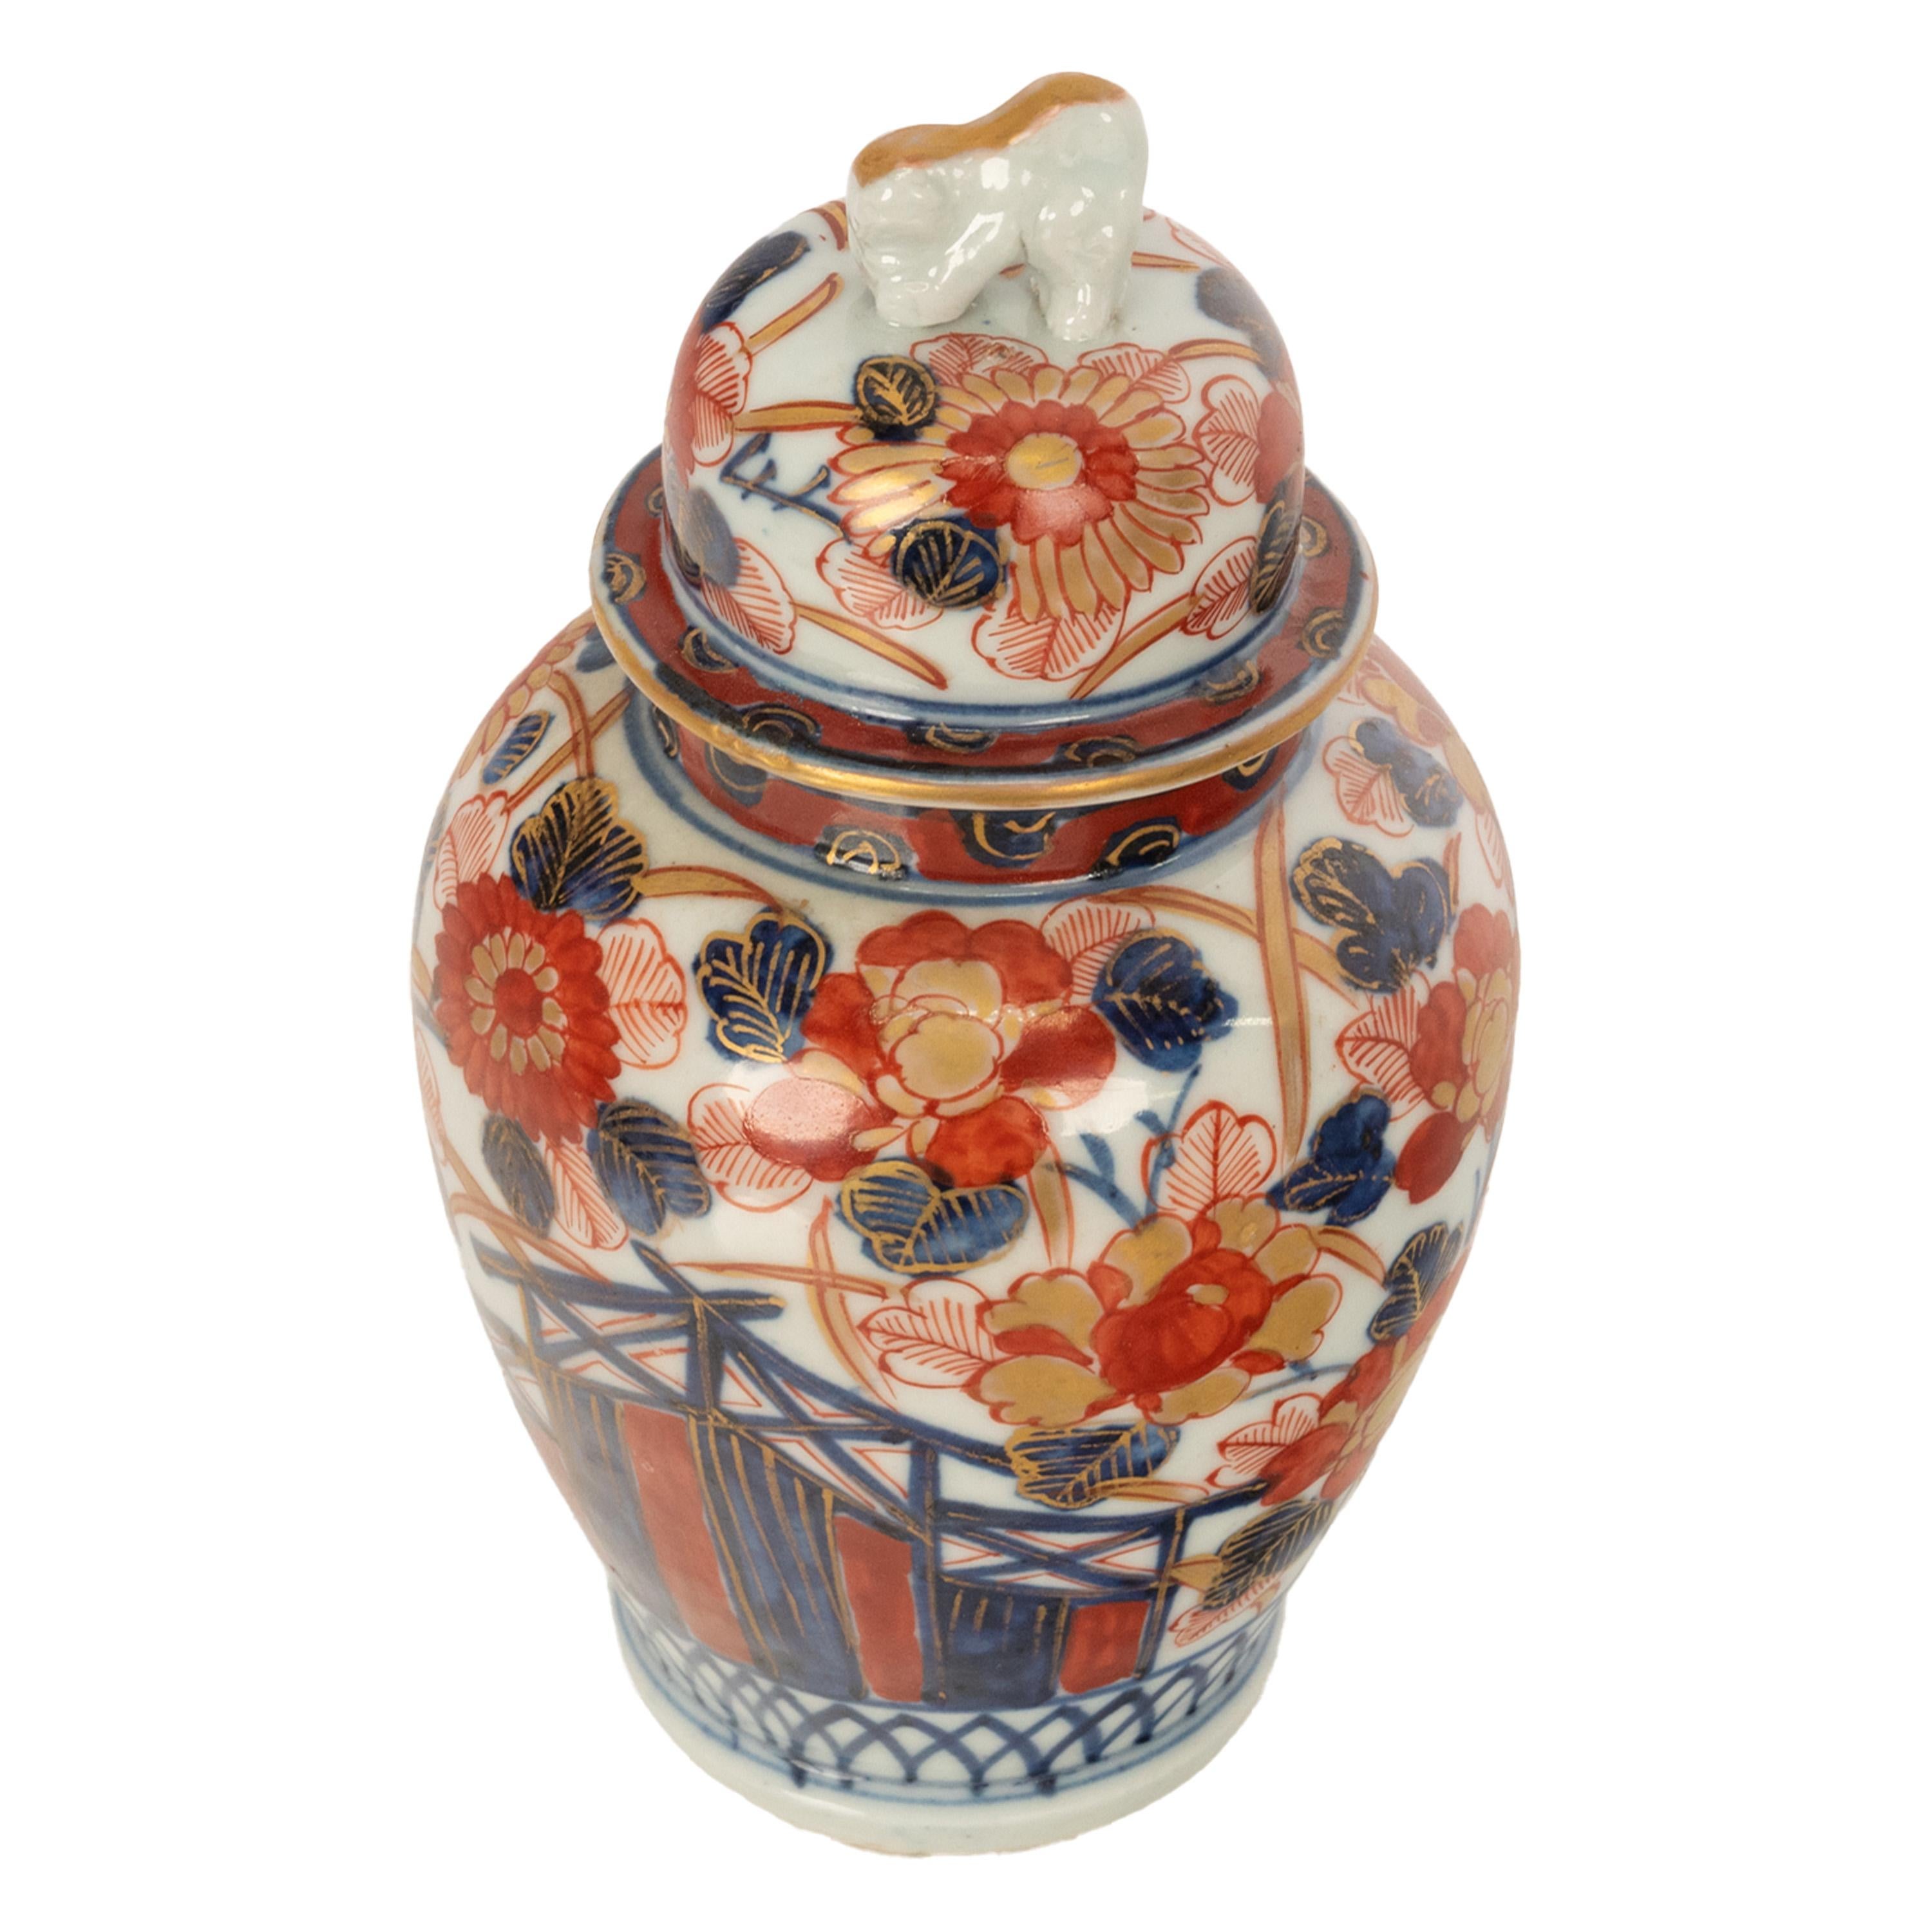 Antique 19thC Japanese Porcelain Meiji Period Imari Lidded Ginger Jar Vase 1890 For Sale 2